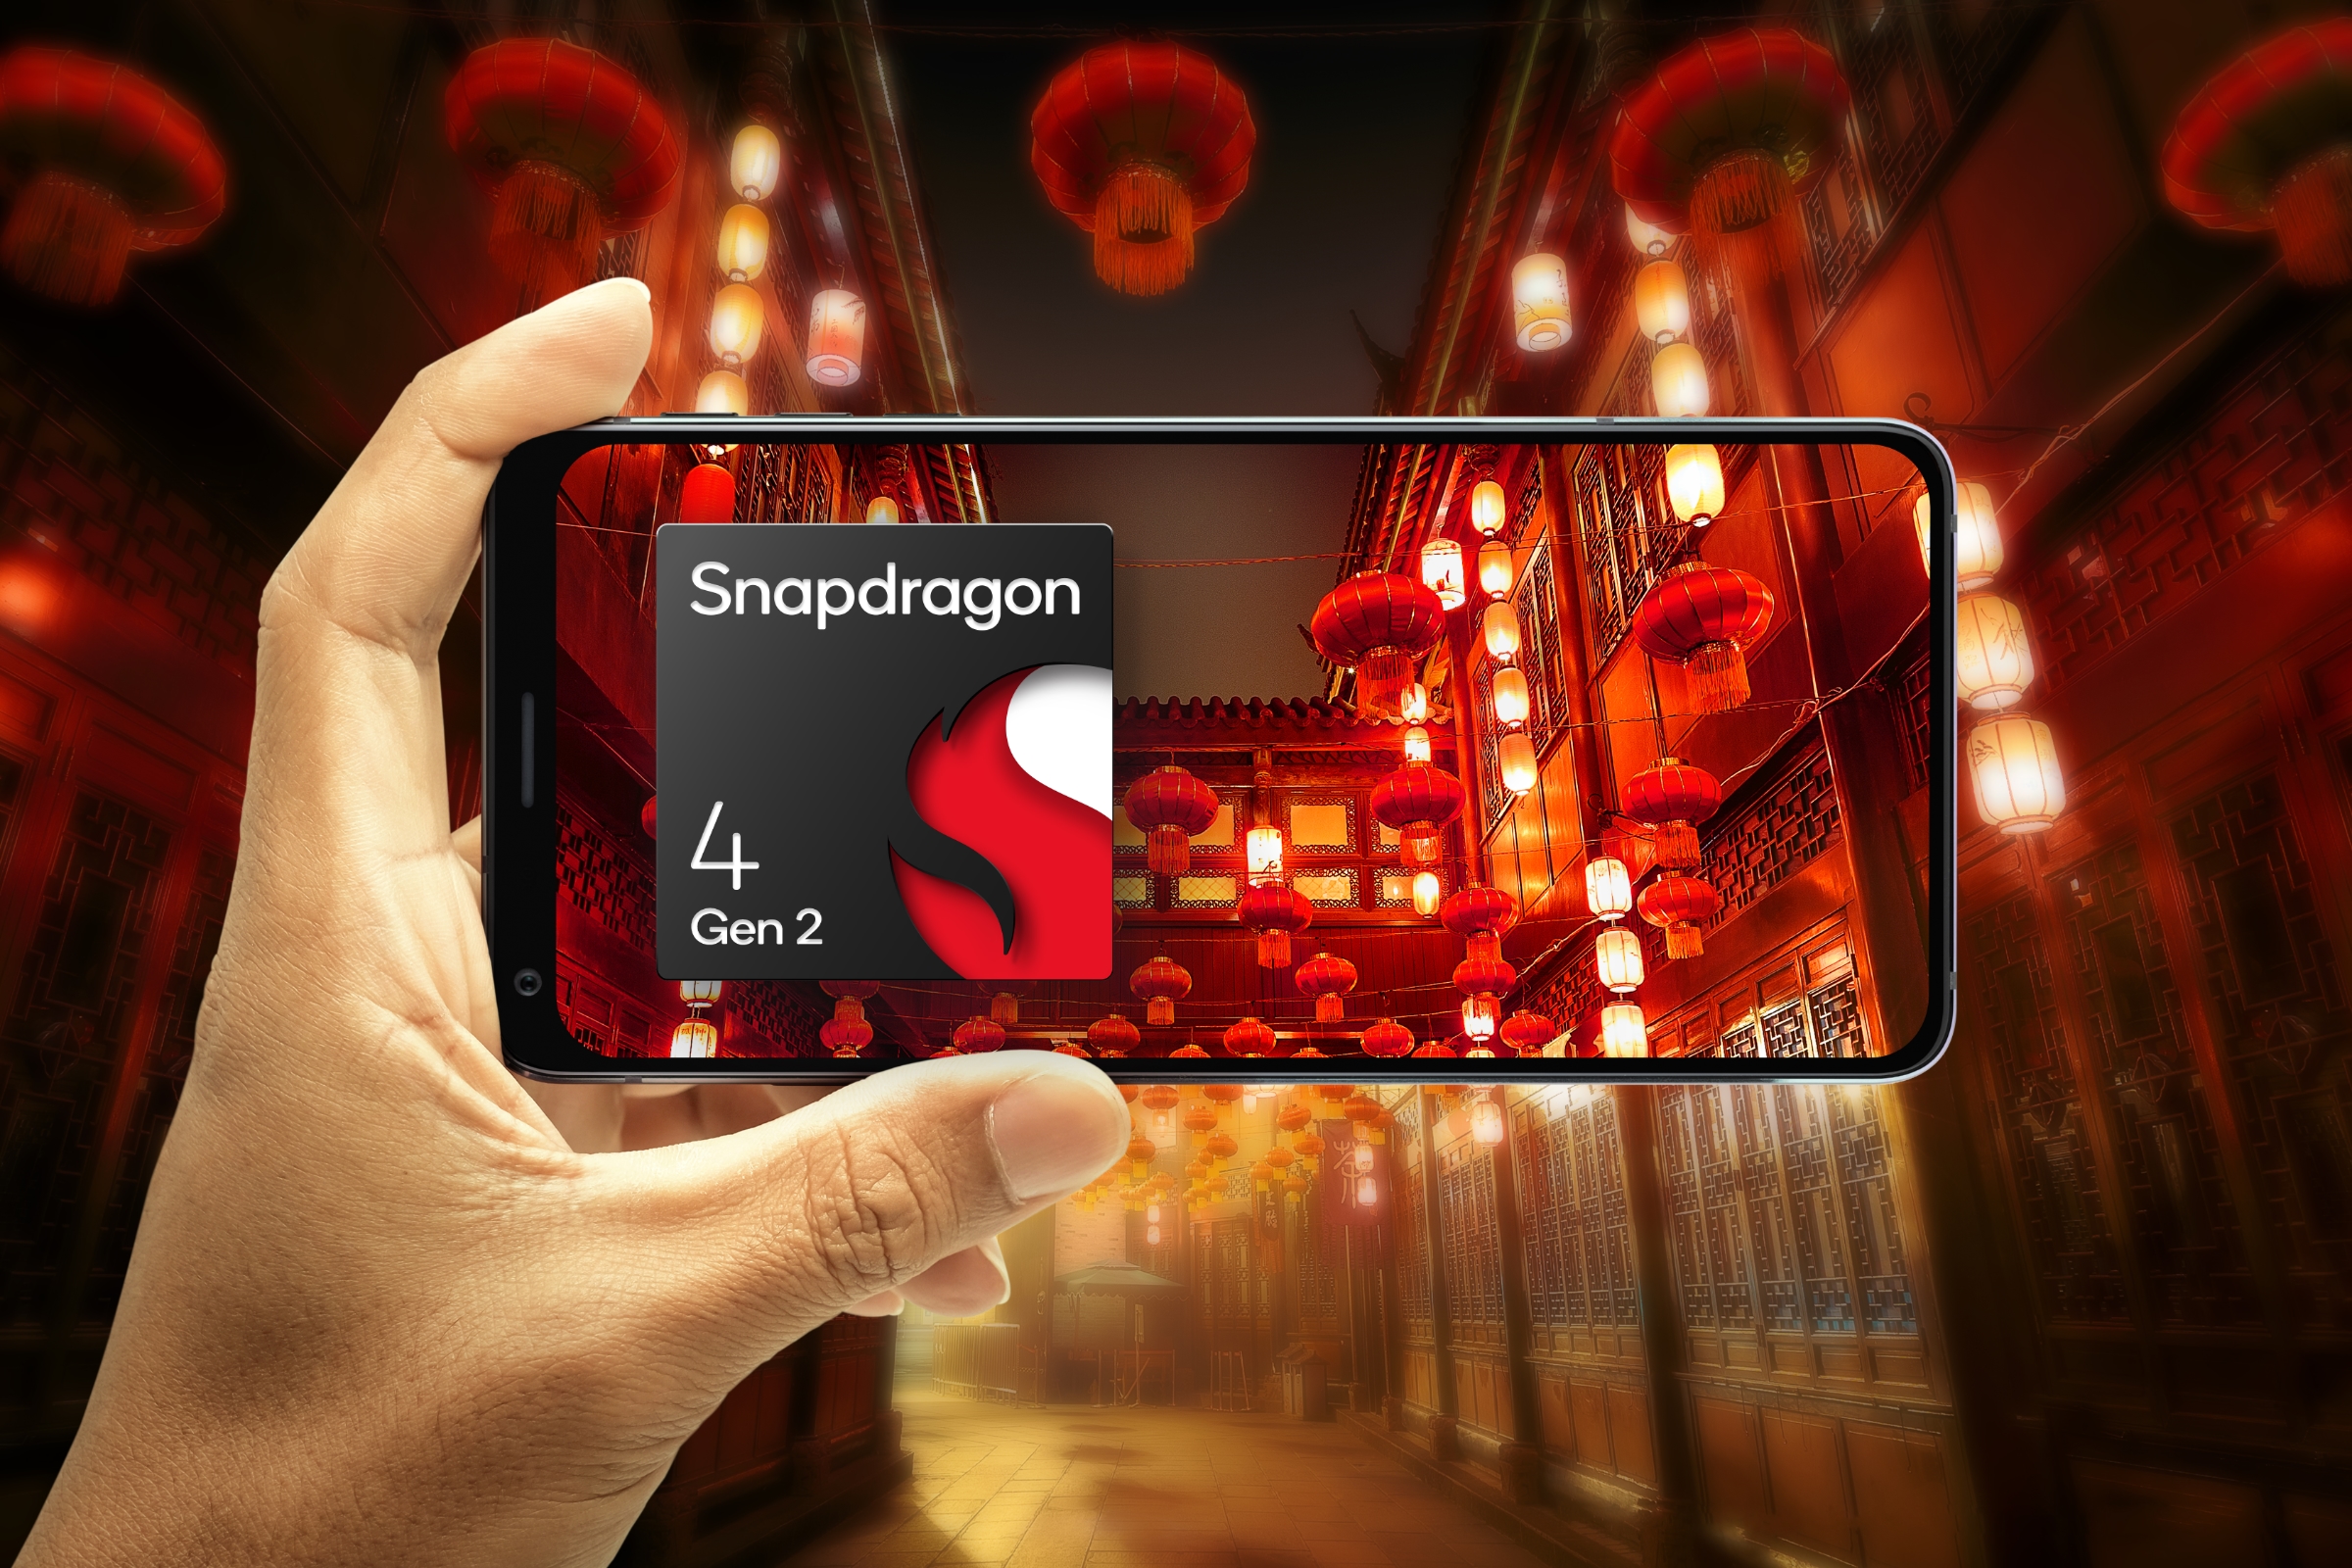 Teléfono sosteniendo la mano en orientación horizontal centrándose en una escena ilustrada de linternas chinas con el logotipo de Qualcomm Snapdragon 4 Gen 2.